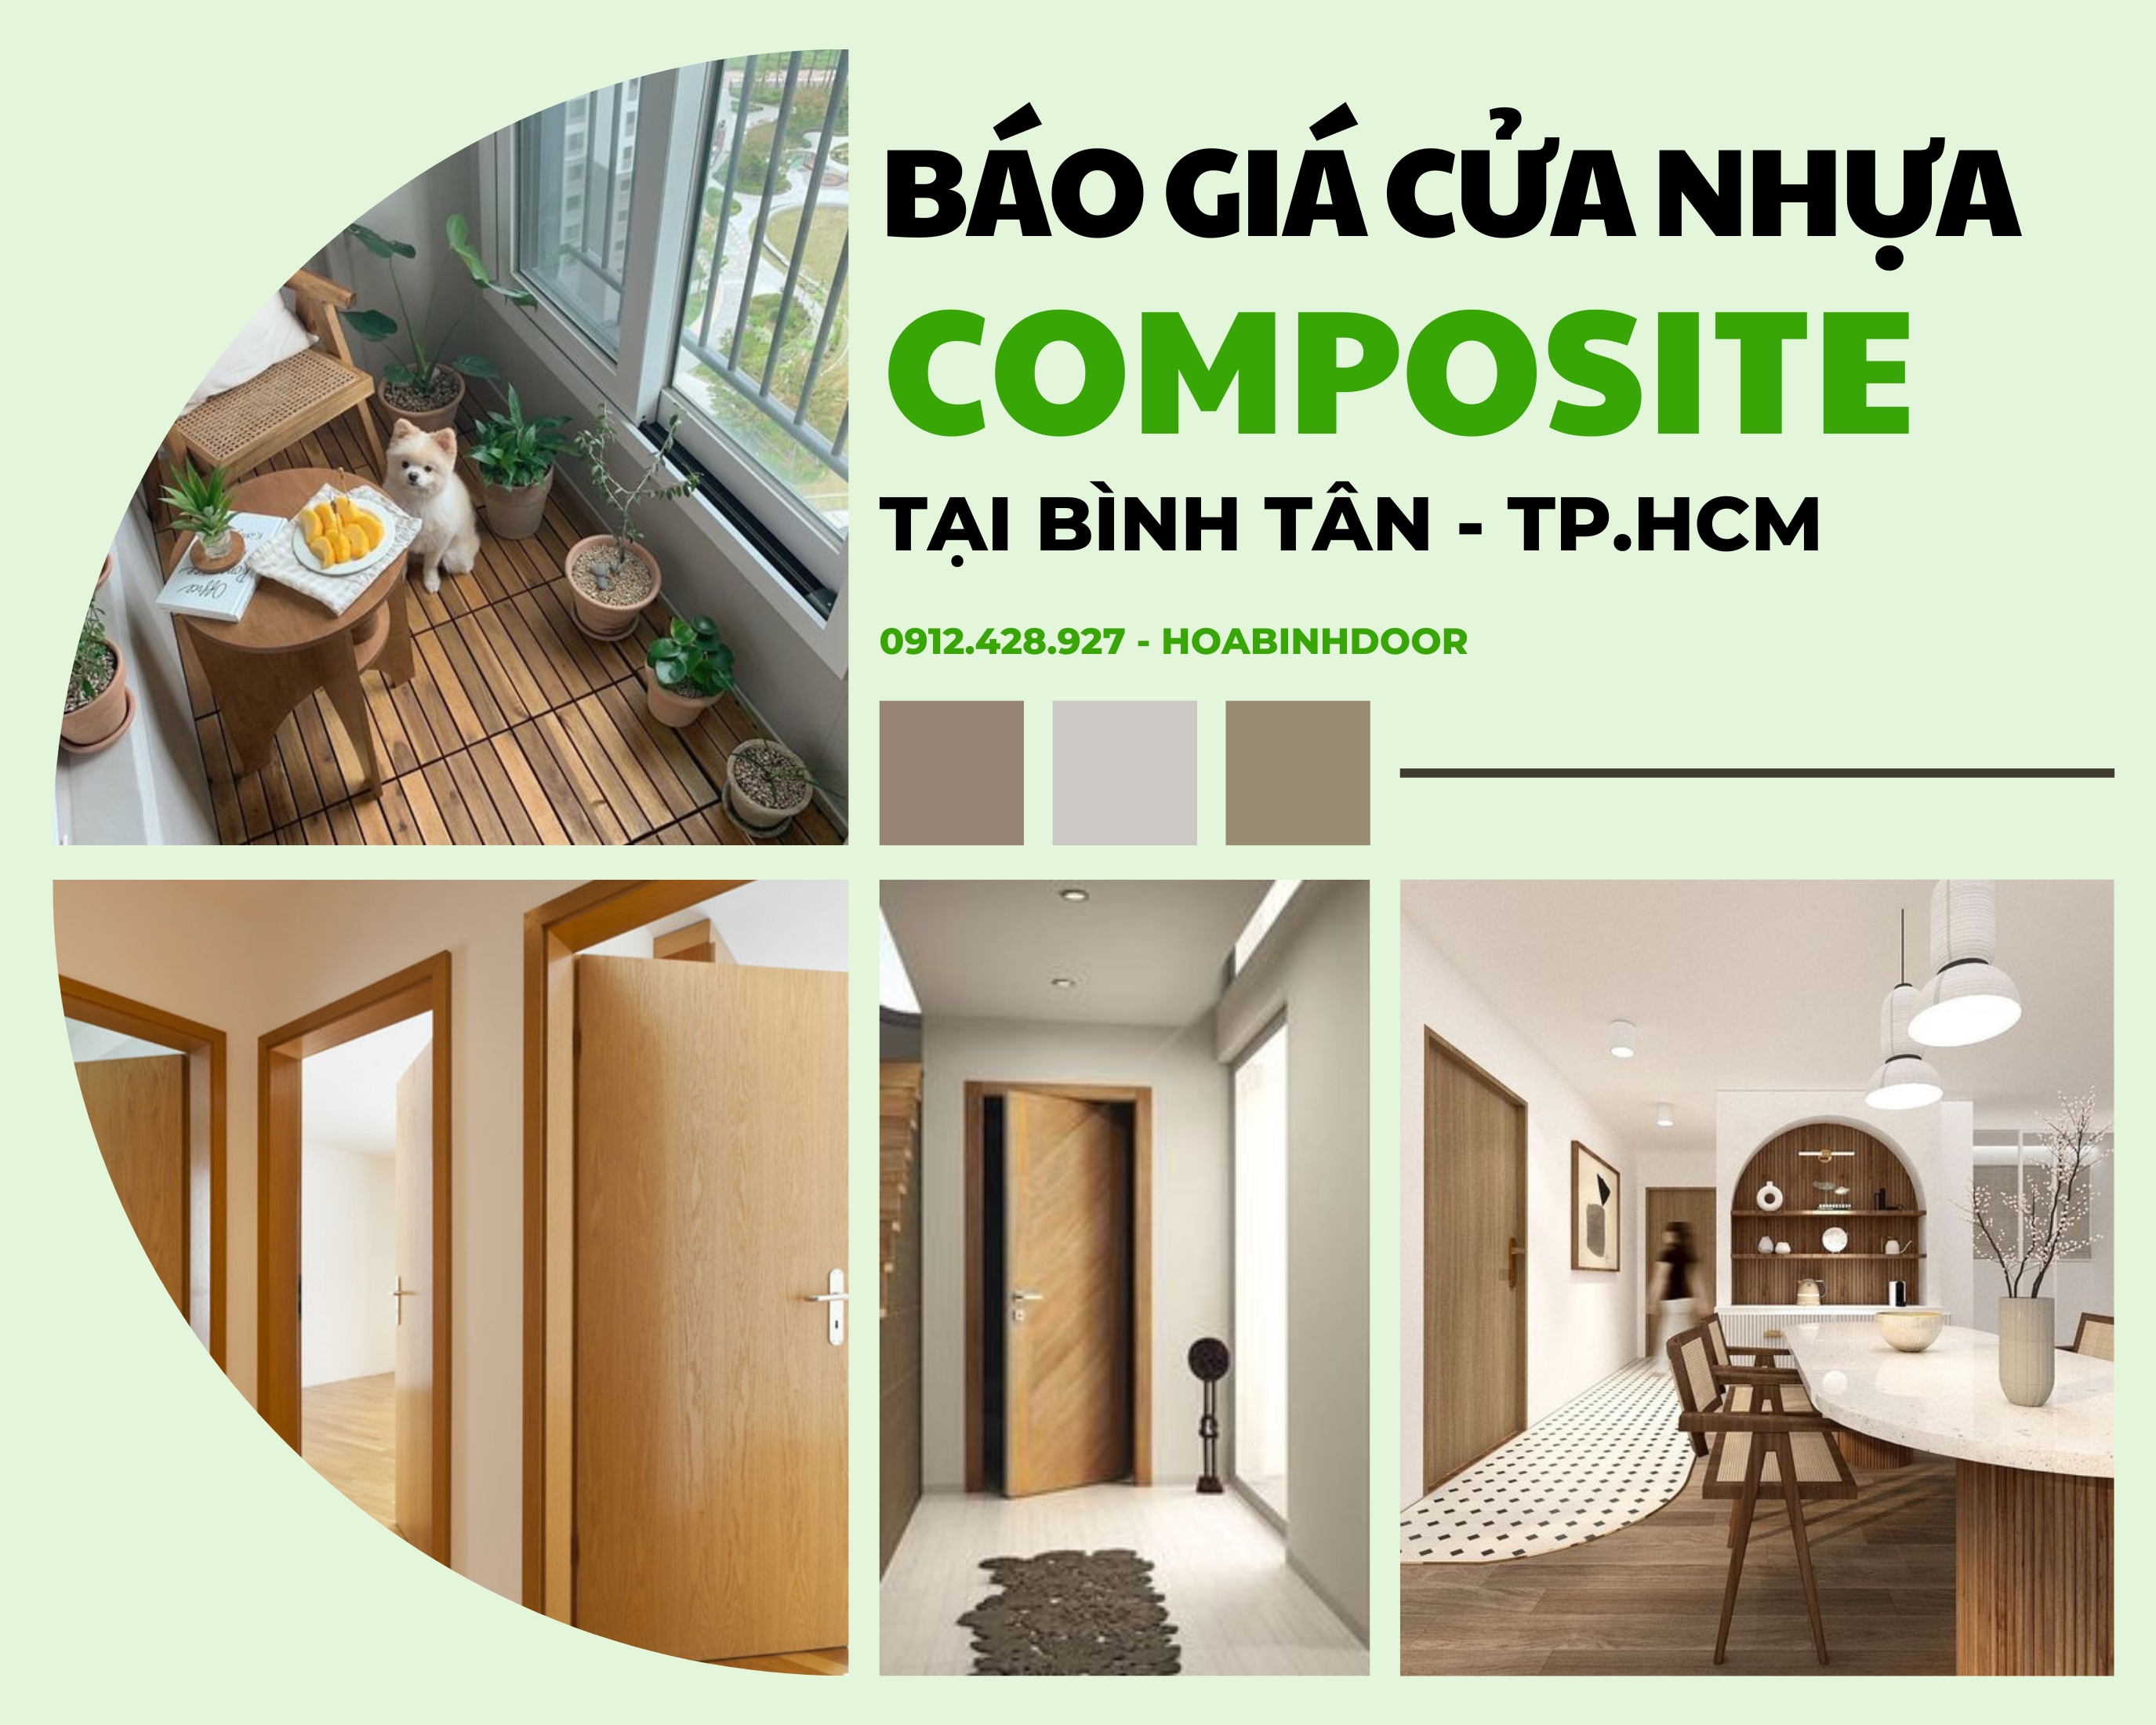 Cửa nhựa Composite tại Bình Tân  Cửa nhựa giả gỗ giá rẻ